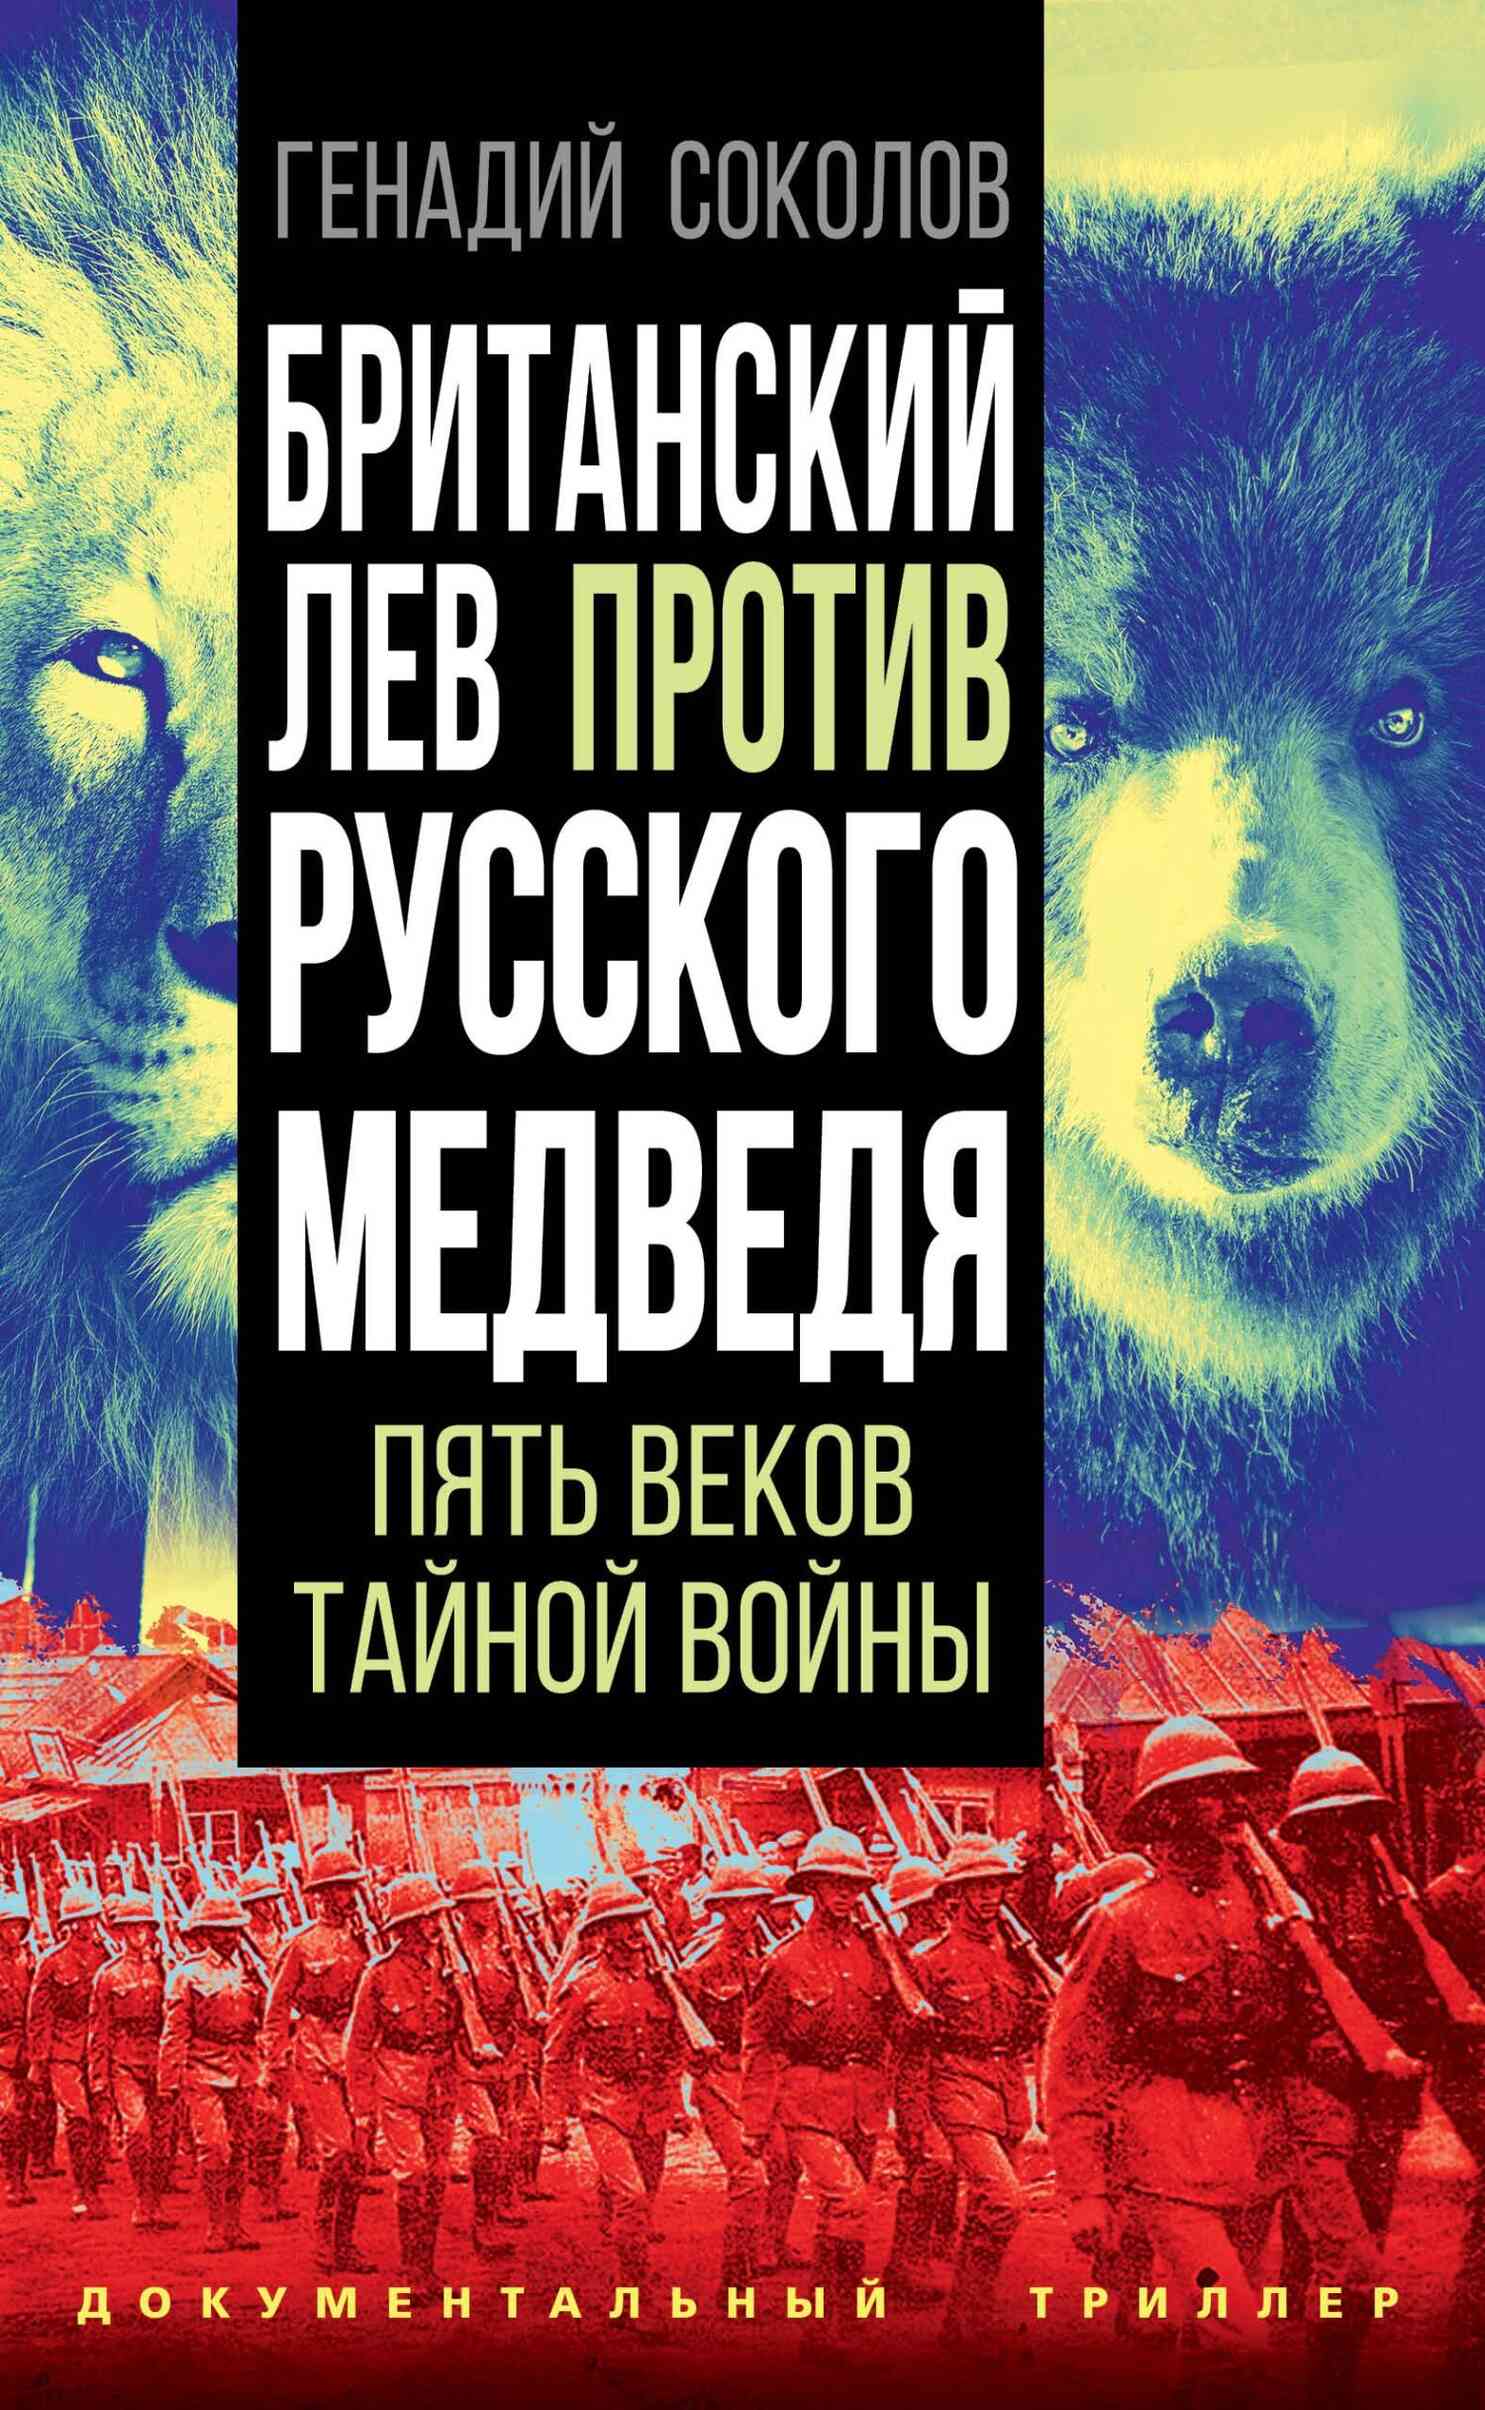 Британский лев против русского медведя (fb2)